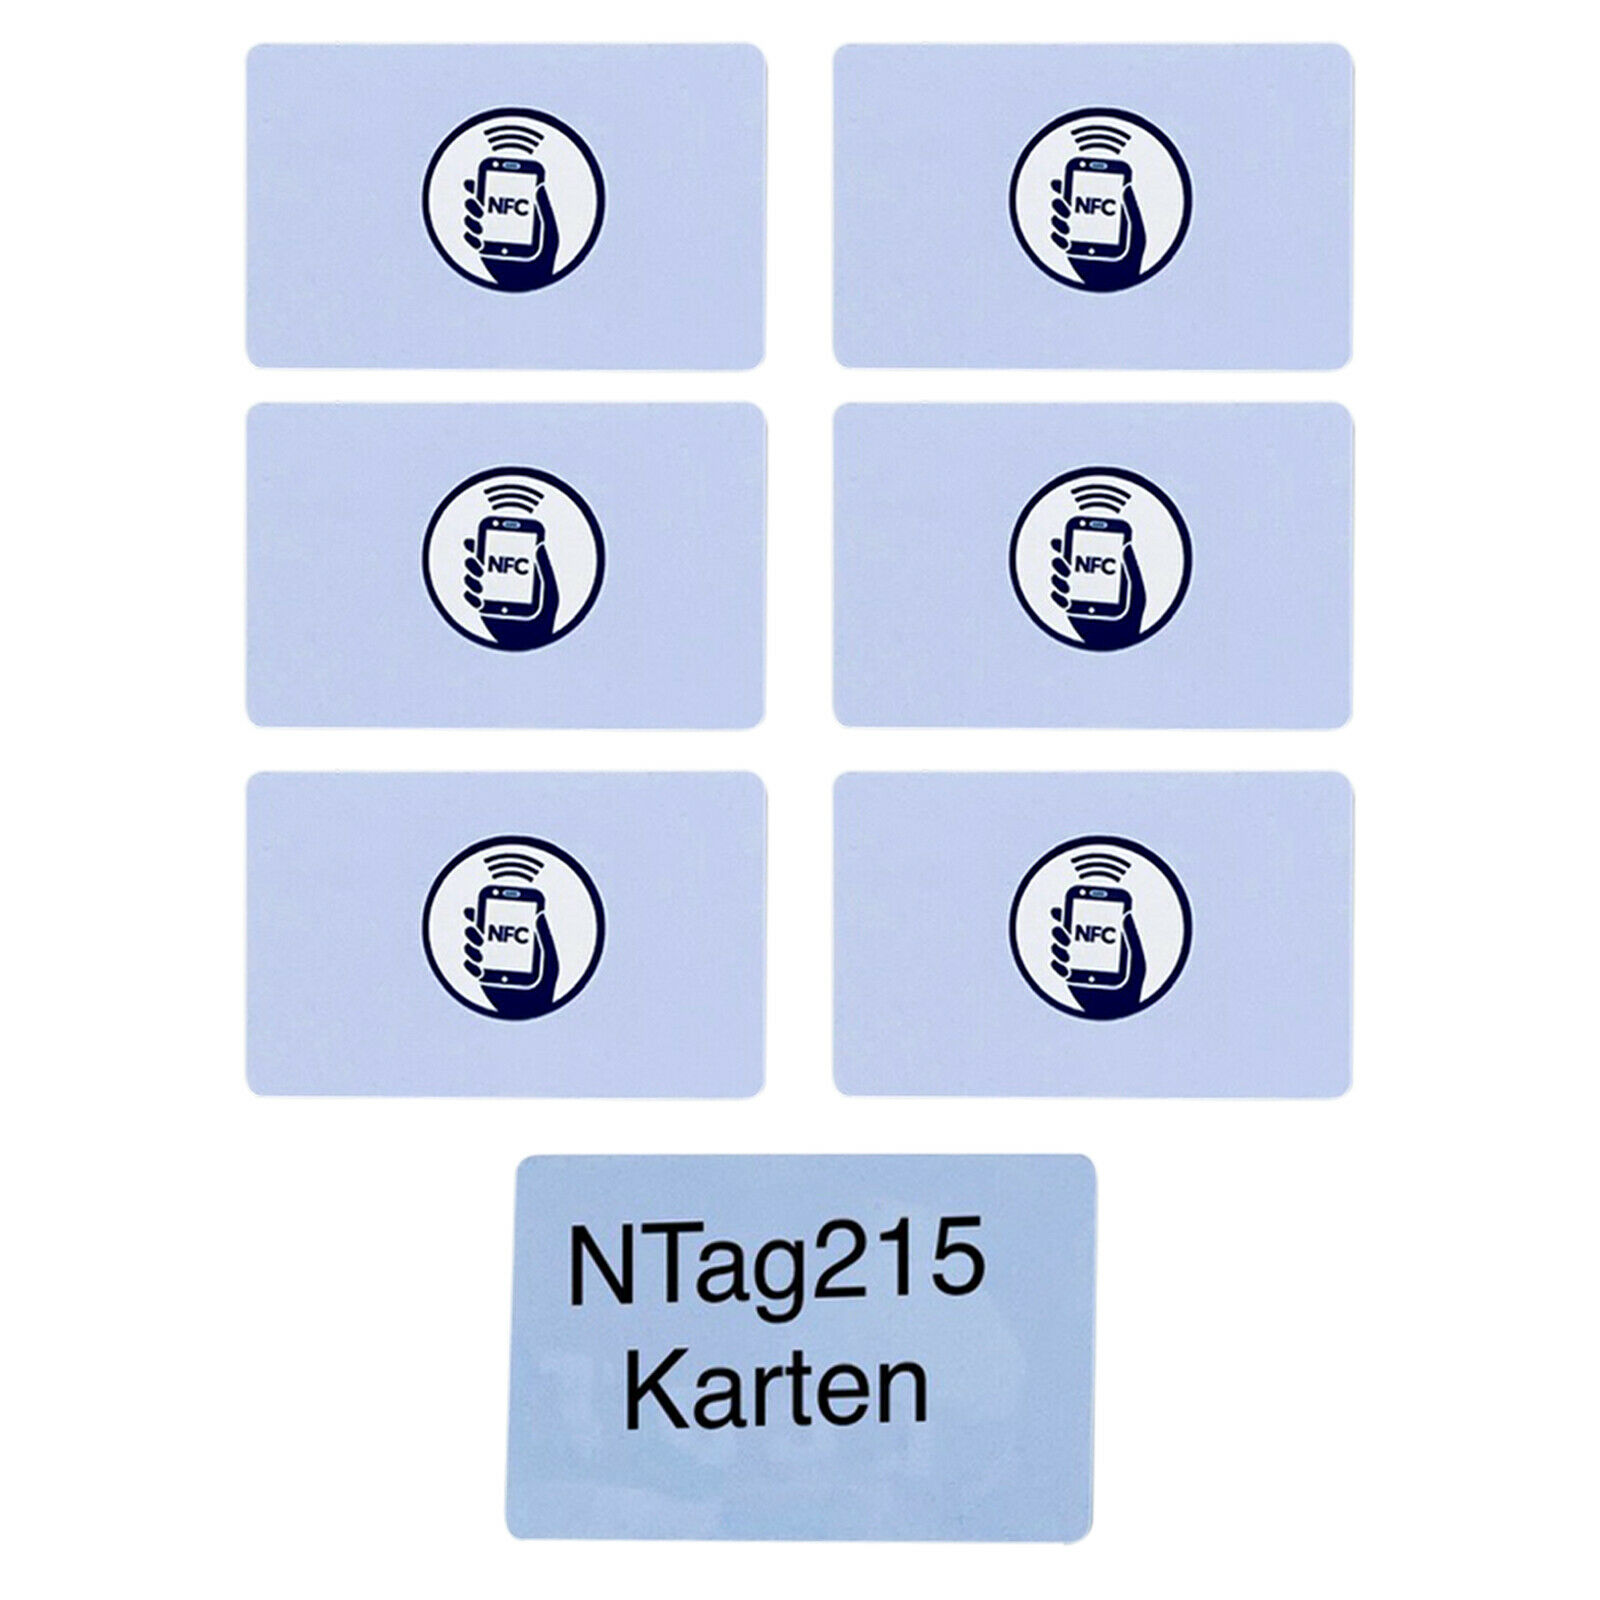 10 x NFC-NTAG215 als Scheckkarte für alle Smartphones u.Amiibo geeignet